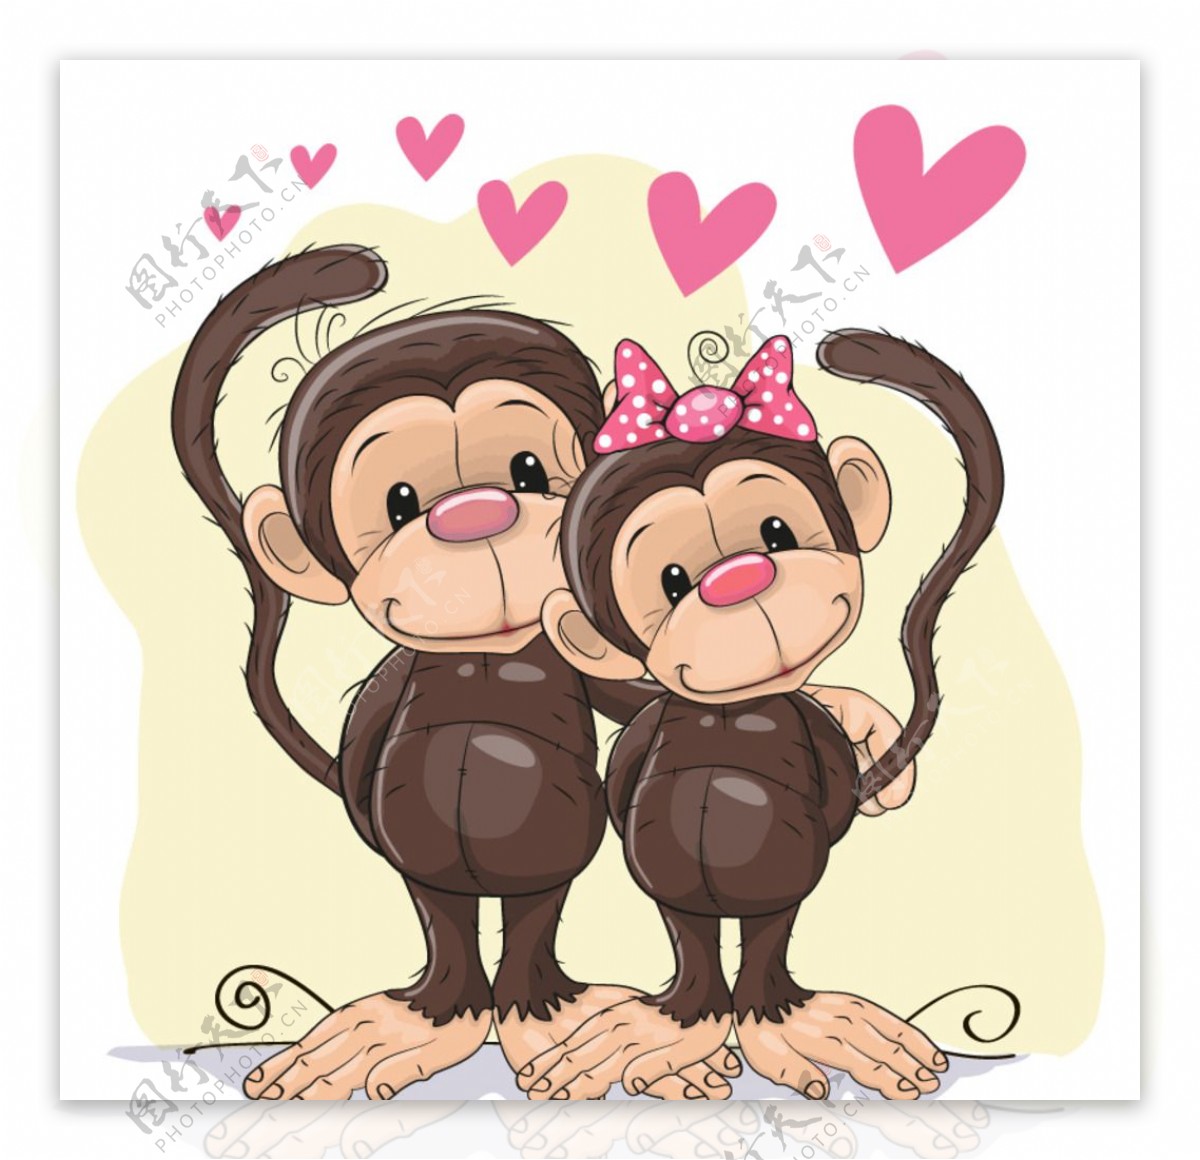 手繪 十二生肖猴子 卡通 12生肖猴子, 猴子剪貼畫, 插畫用圖, 哺乳動物素材圖案，PSD和PNG圖片免費下載